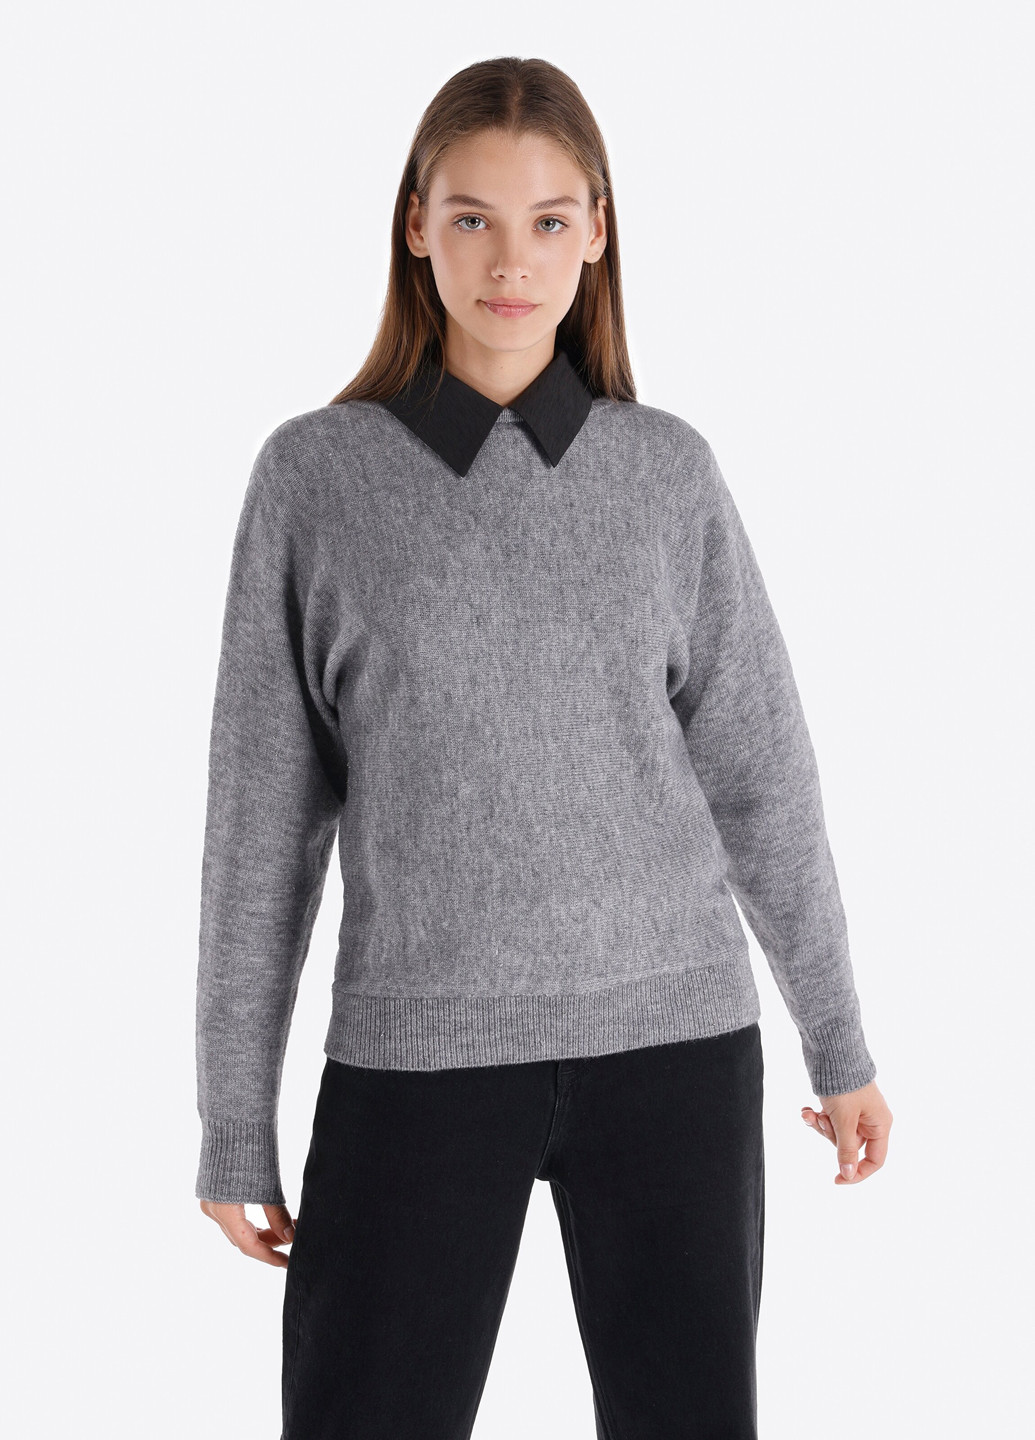 Серый зимний свитер джемпер Colin's